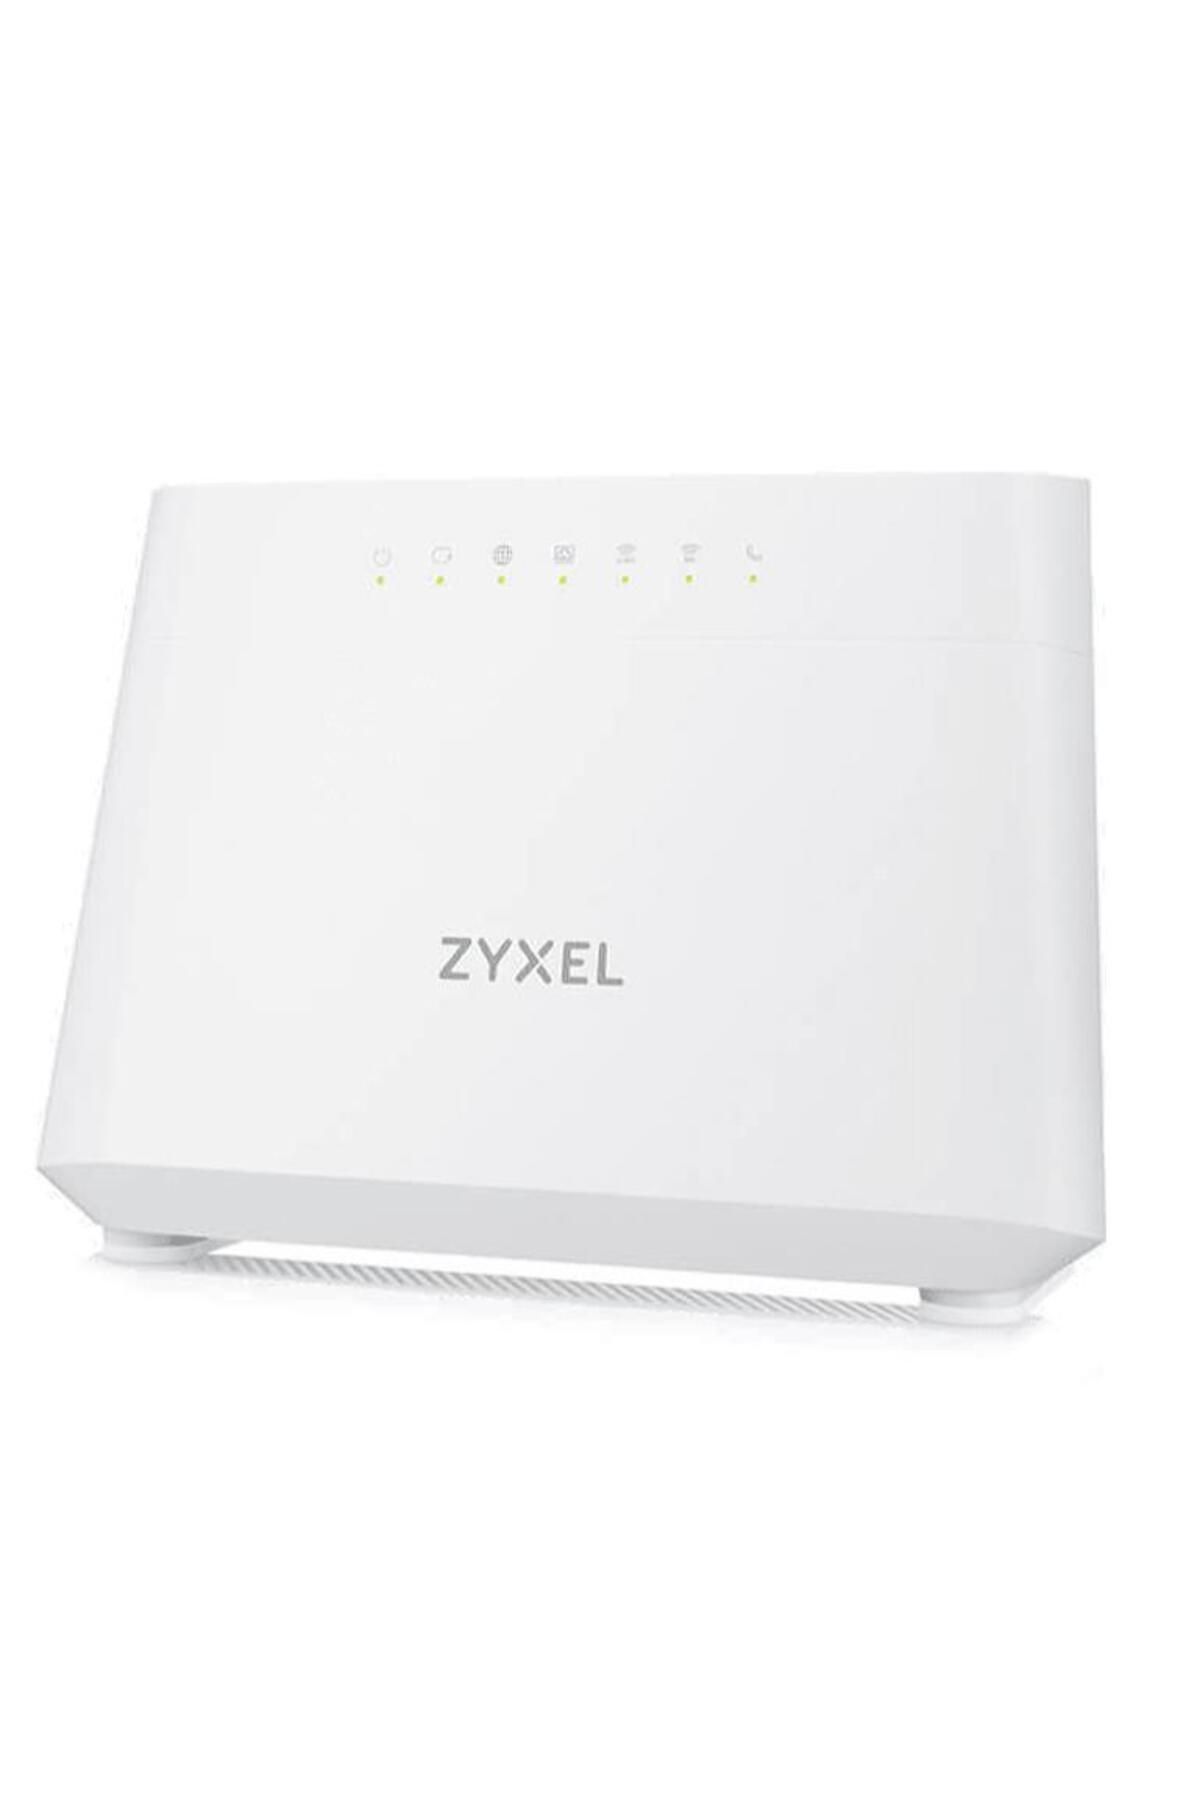 Zyxel Dx3301-t0 574mbps-1201mbps Kablosuz-ax Wi-fi 6 5 Port Vdsl Modem